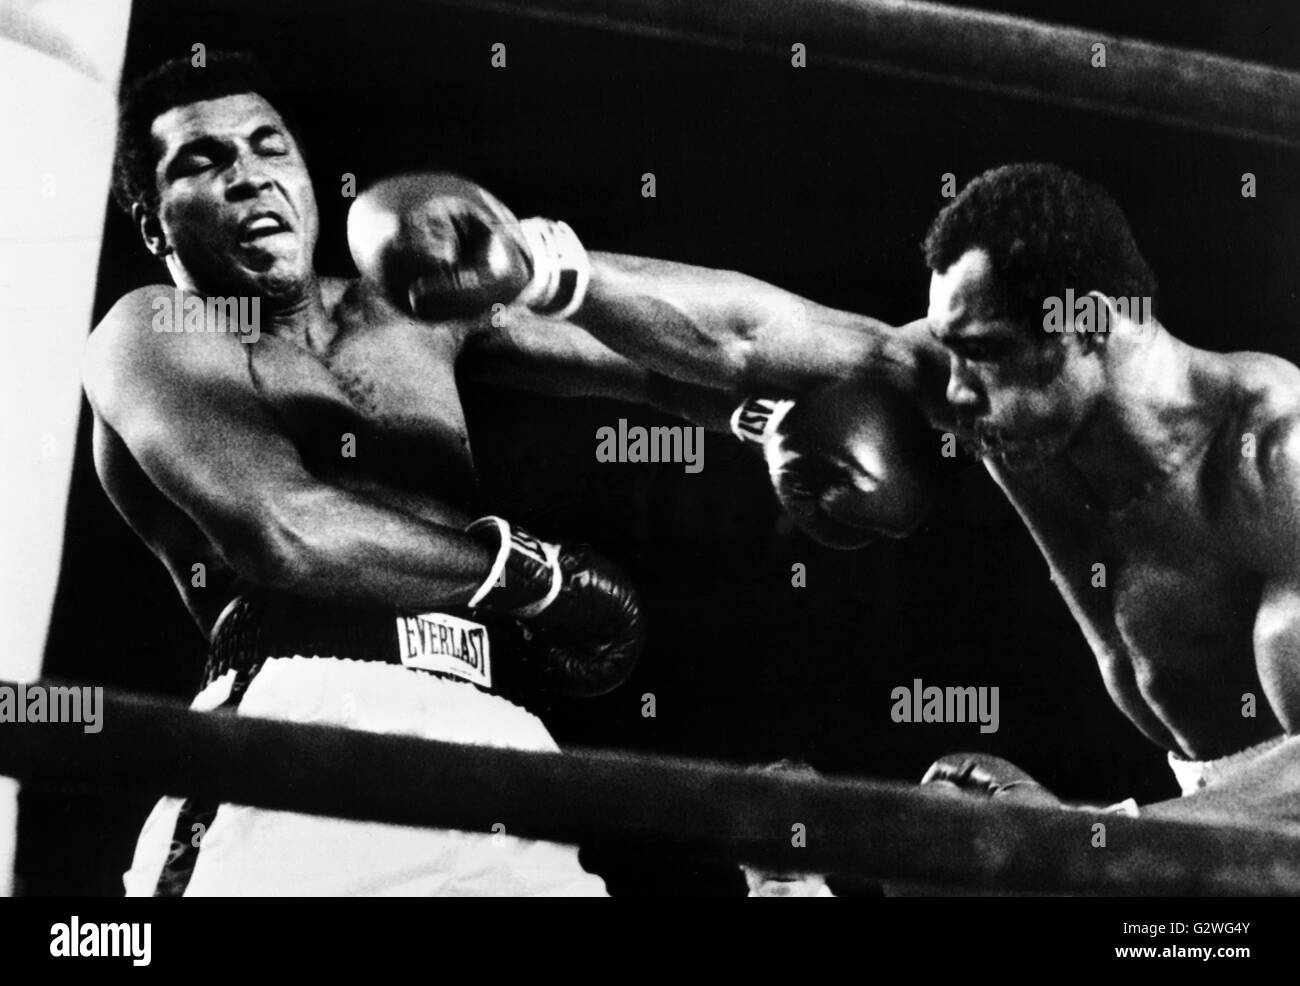 FILE - un file immagine datata 29 settembre 1976, ci mostra il boxer Muhammad Ali (L) schivando un colpo dal suo avversario Ken Norton durante il loro mondo heavyweight championship bout in New York, Stati Uniti d'America. Nato Cassio argilla, boxe leggenda Muhammad Ali, soprannominato 'il più grande, ' morì il 03 giugno 2016 a Phoenix, Arizona, Stati Uniti d'America, all'età di 74, una famiglia portavoce ha detto. Foto: UPI/dpa Foto Stock